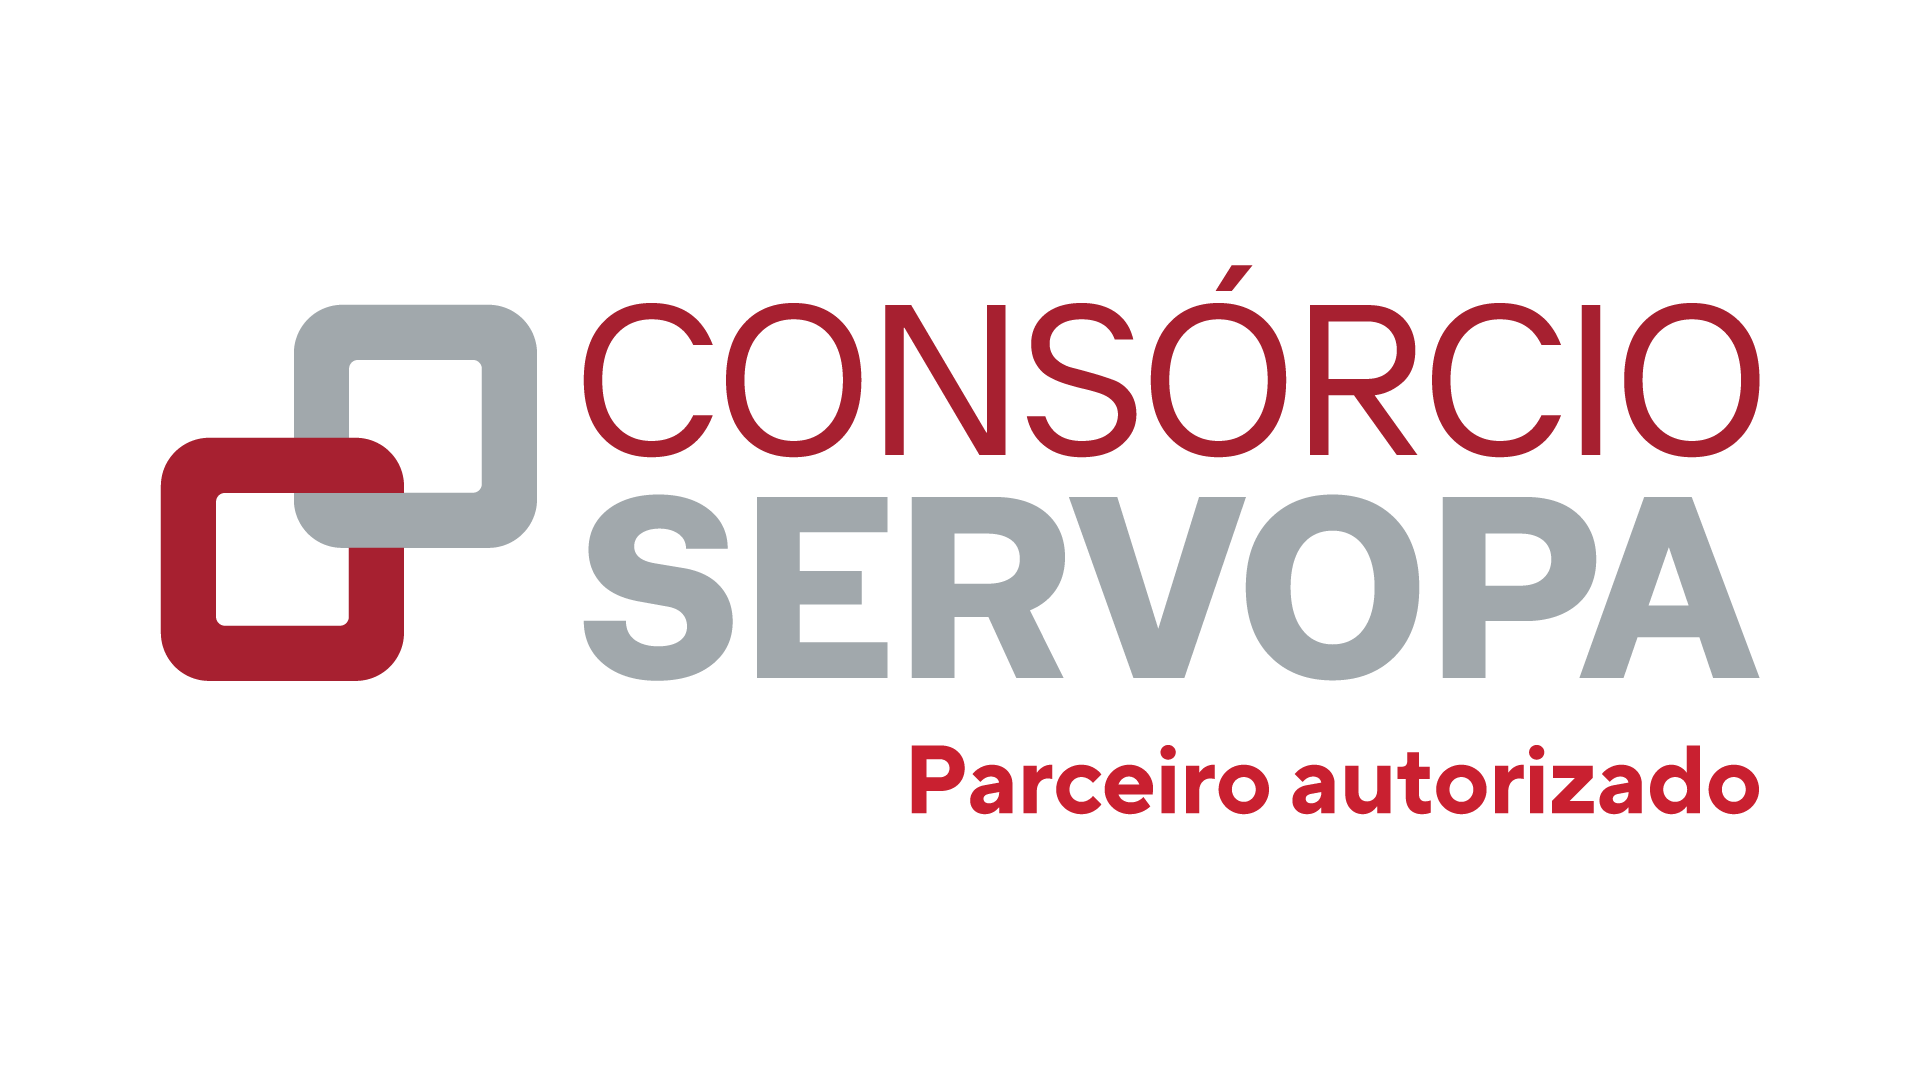 LOGO-CONSORCIO-SERVOPA_PARCEIROS